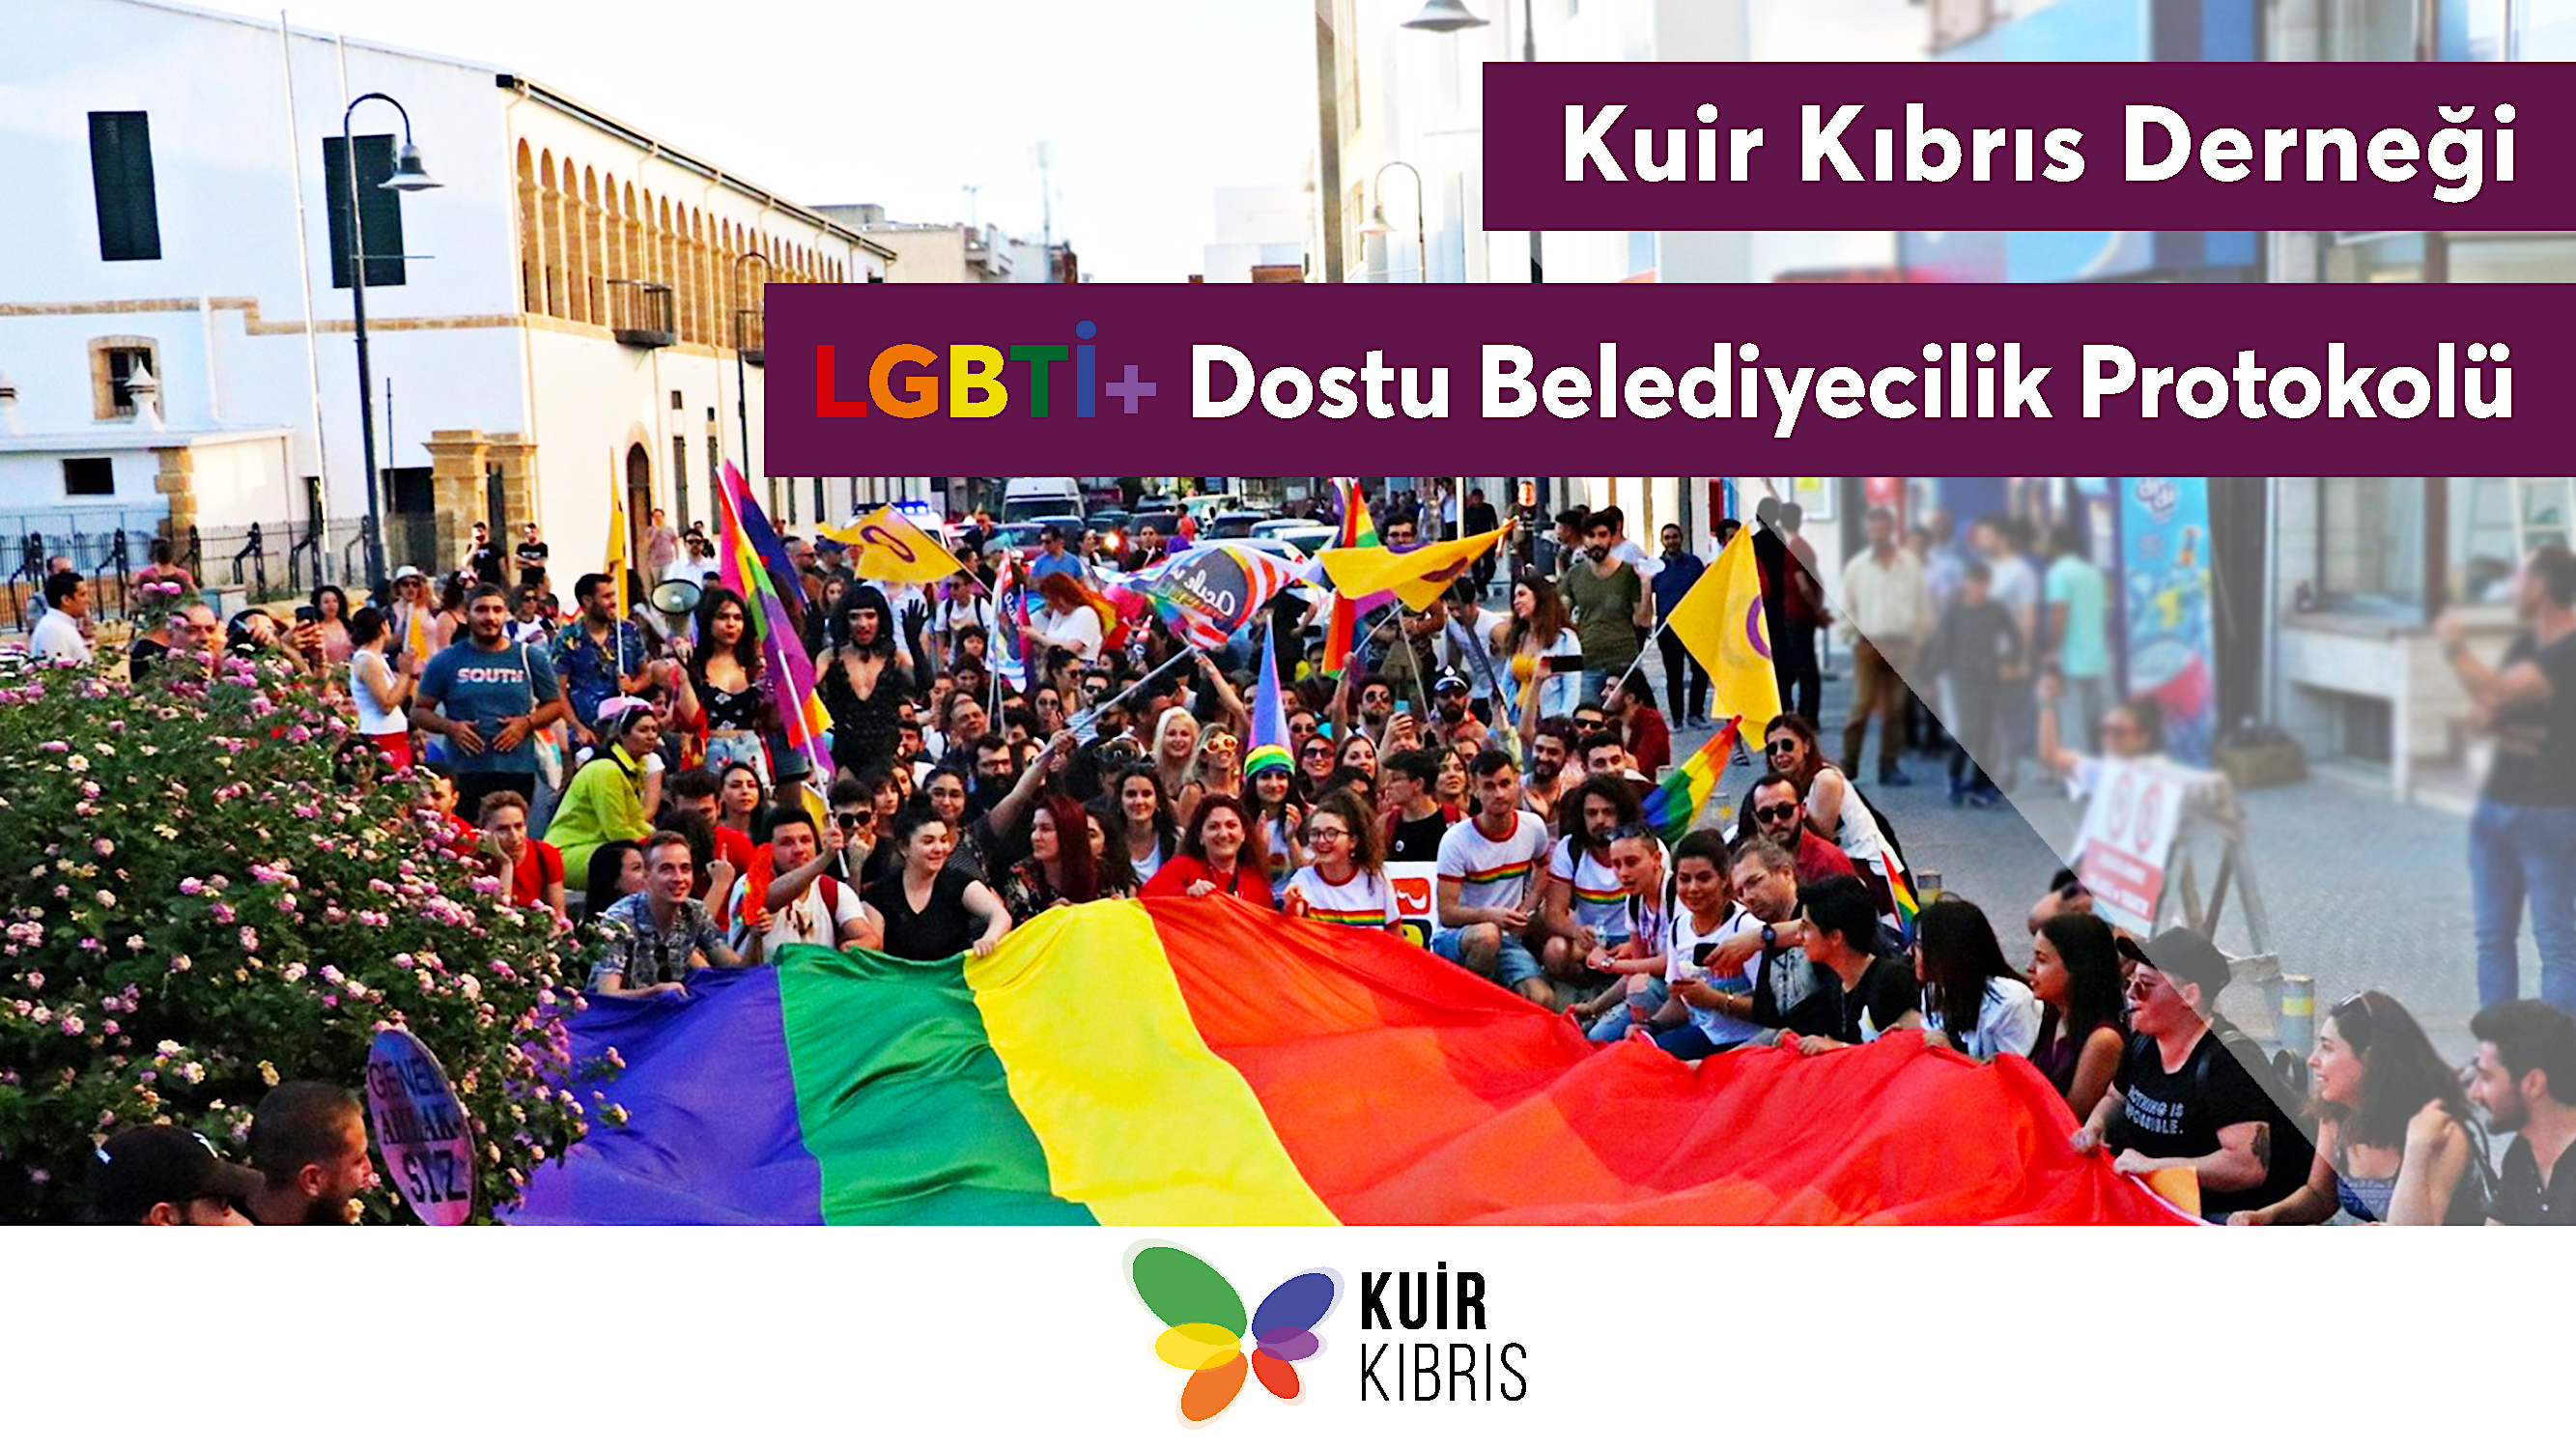 Yerel seçimler öncesi Kıbrıs’ın kuzeyinde LGBTİ+ Dostu Belediyecilik Protokolü | Kaos GL - LGBTİ+ Haber Portalı